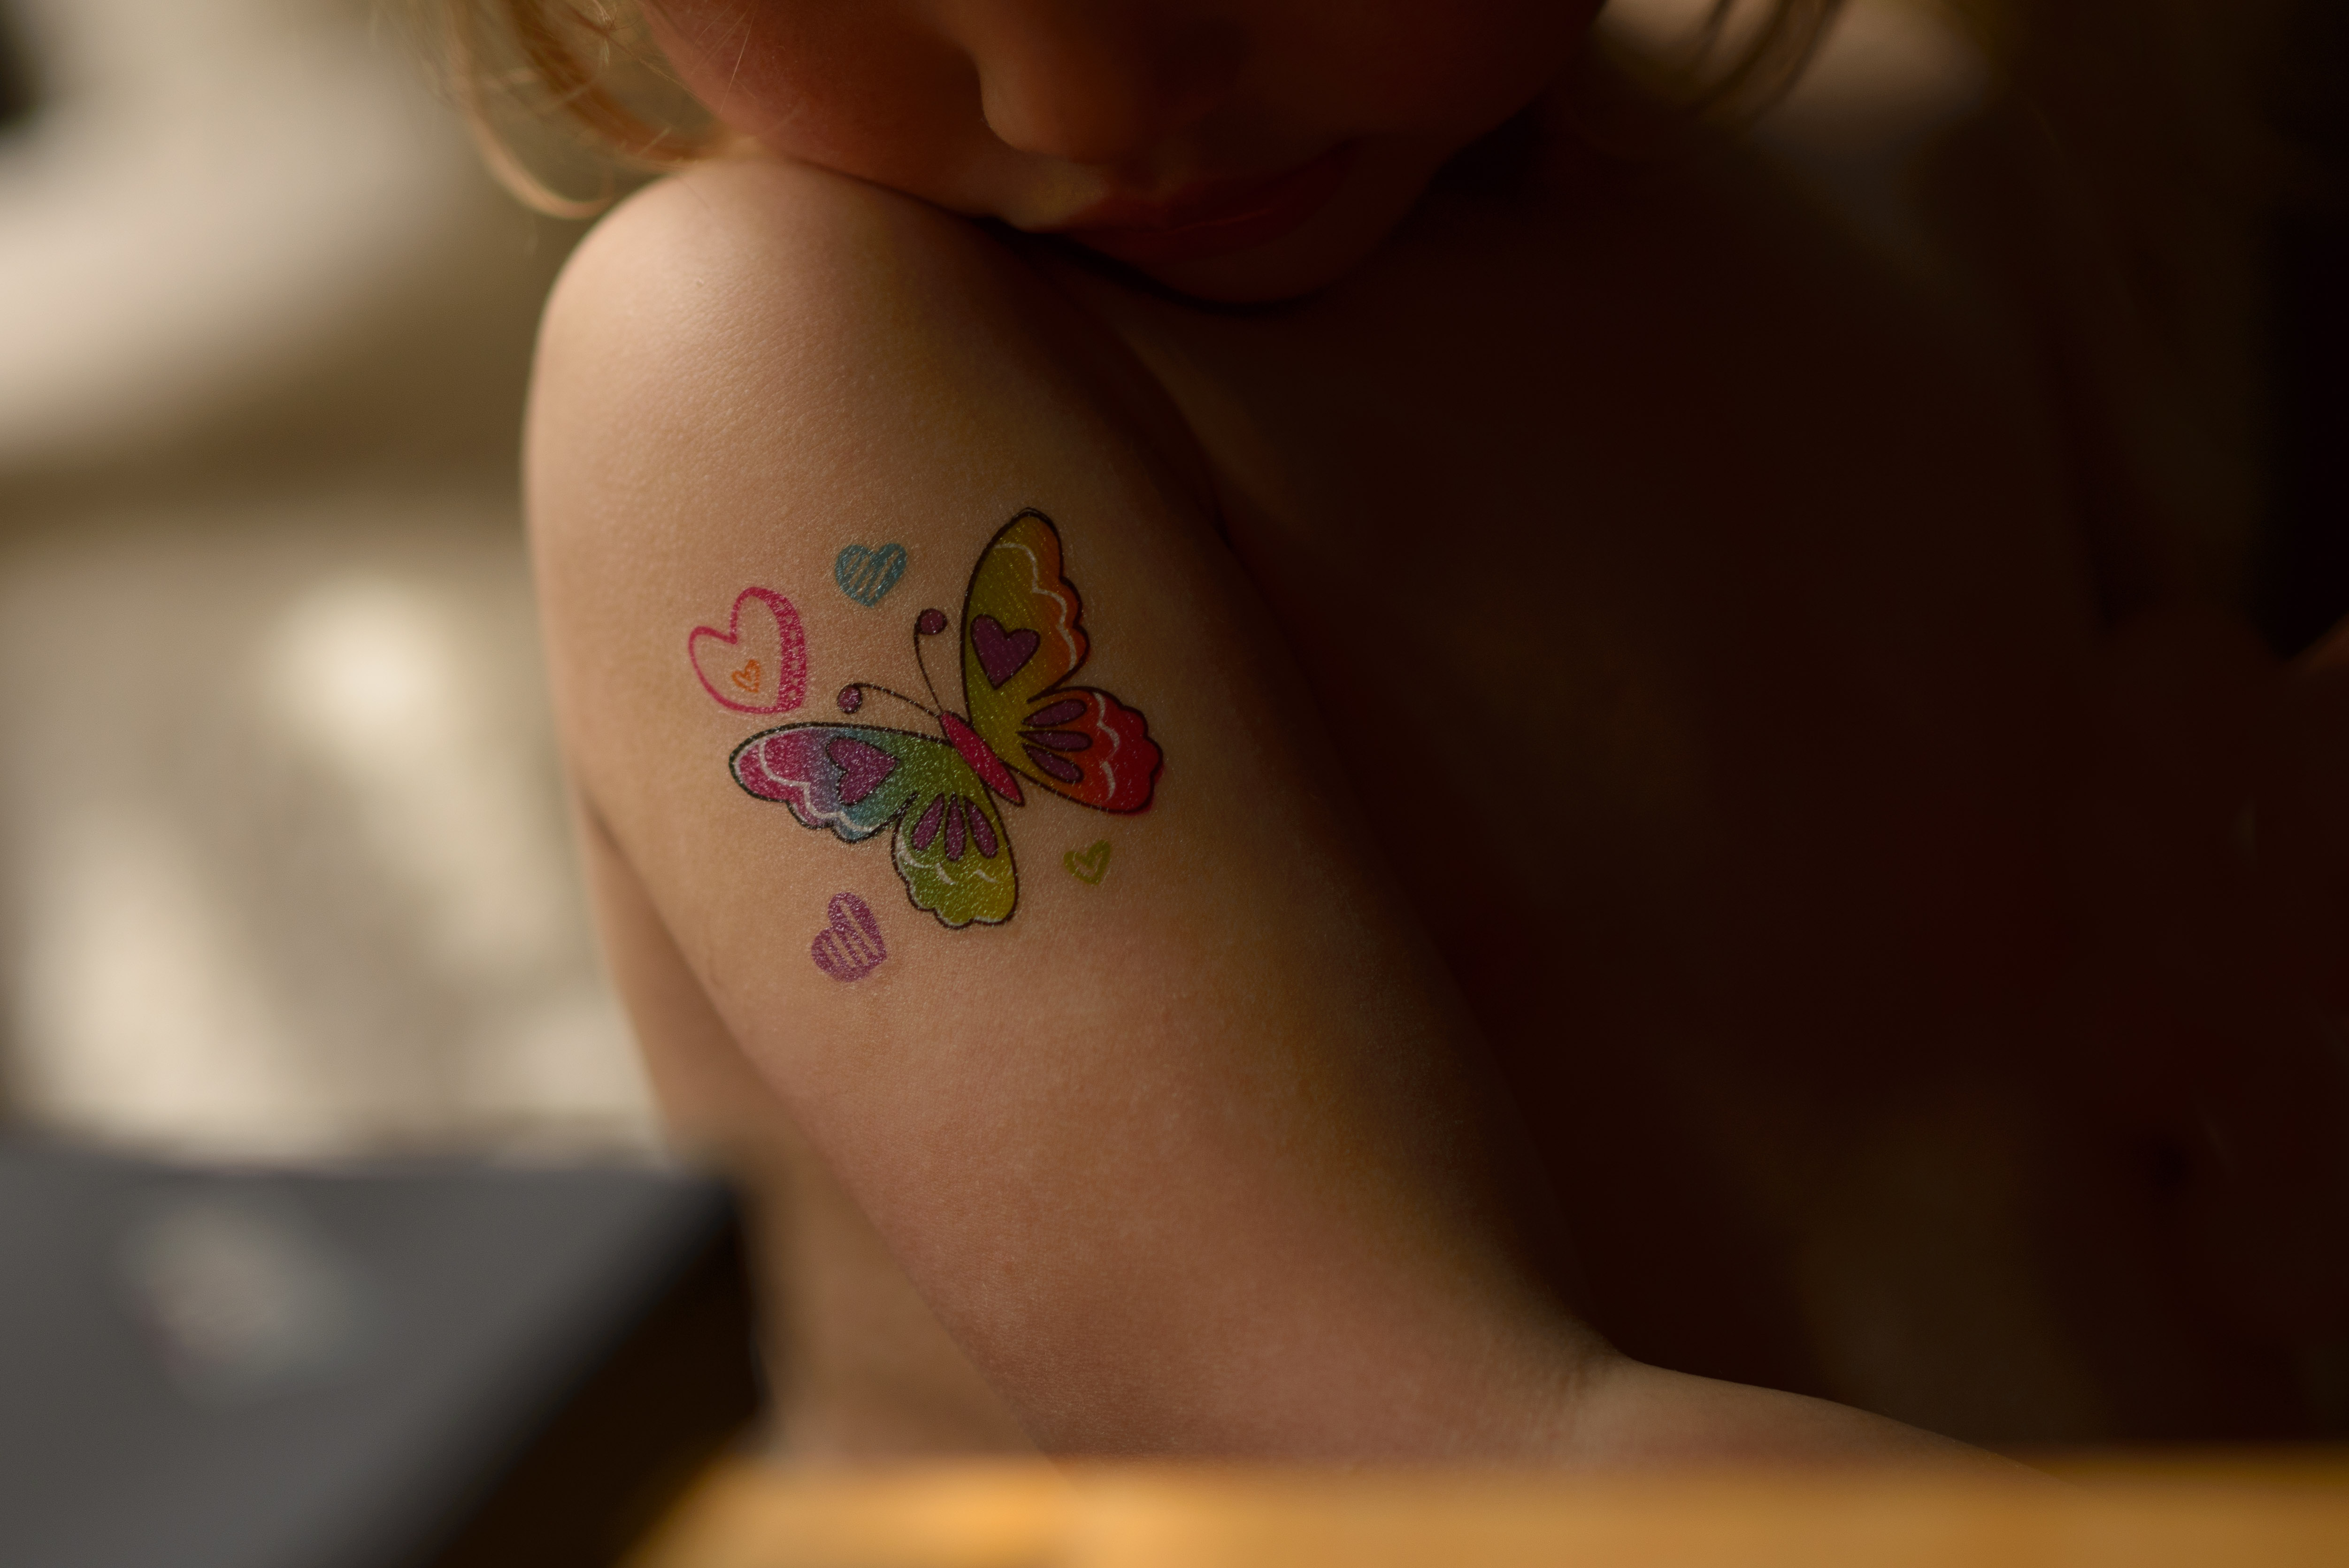 Celia's butterfly tattoo